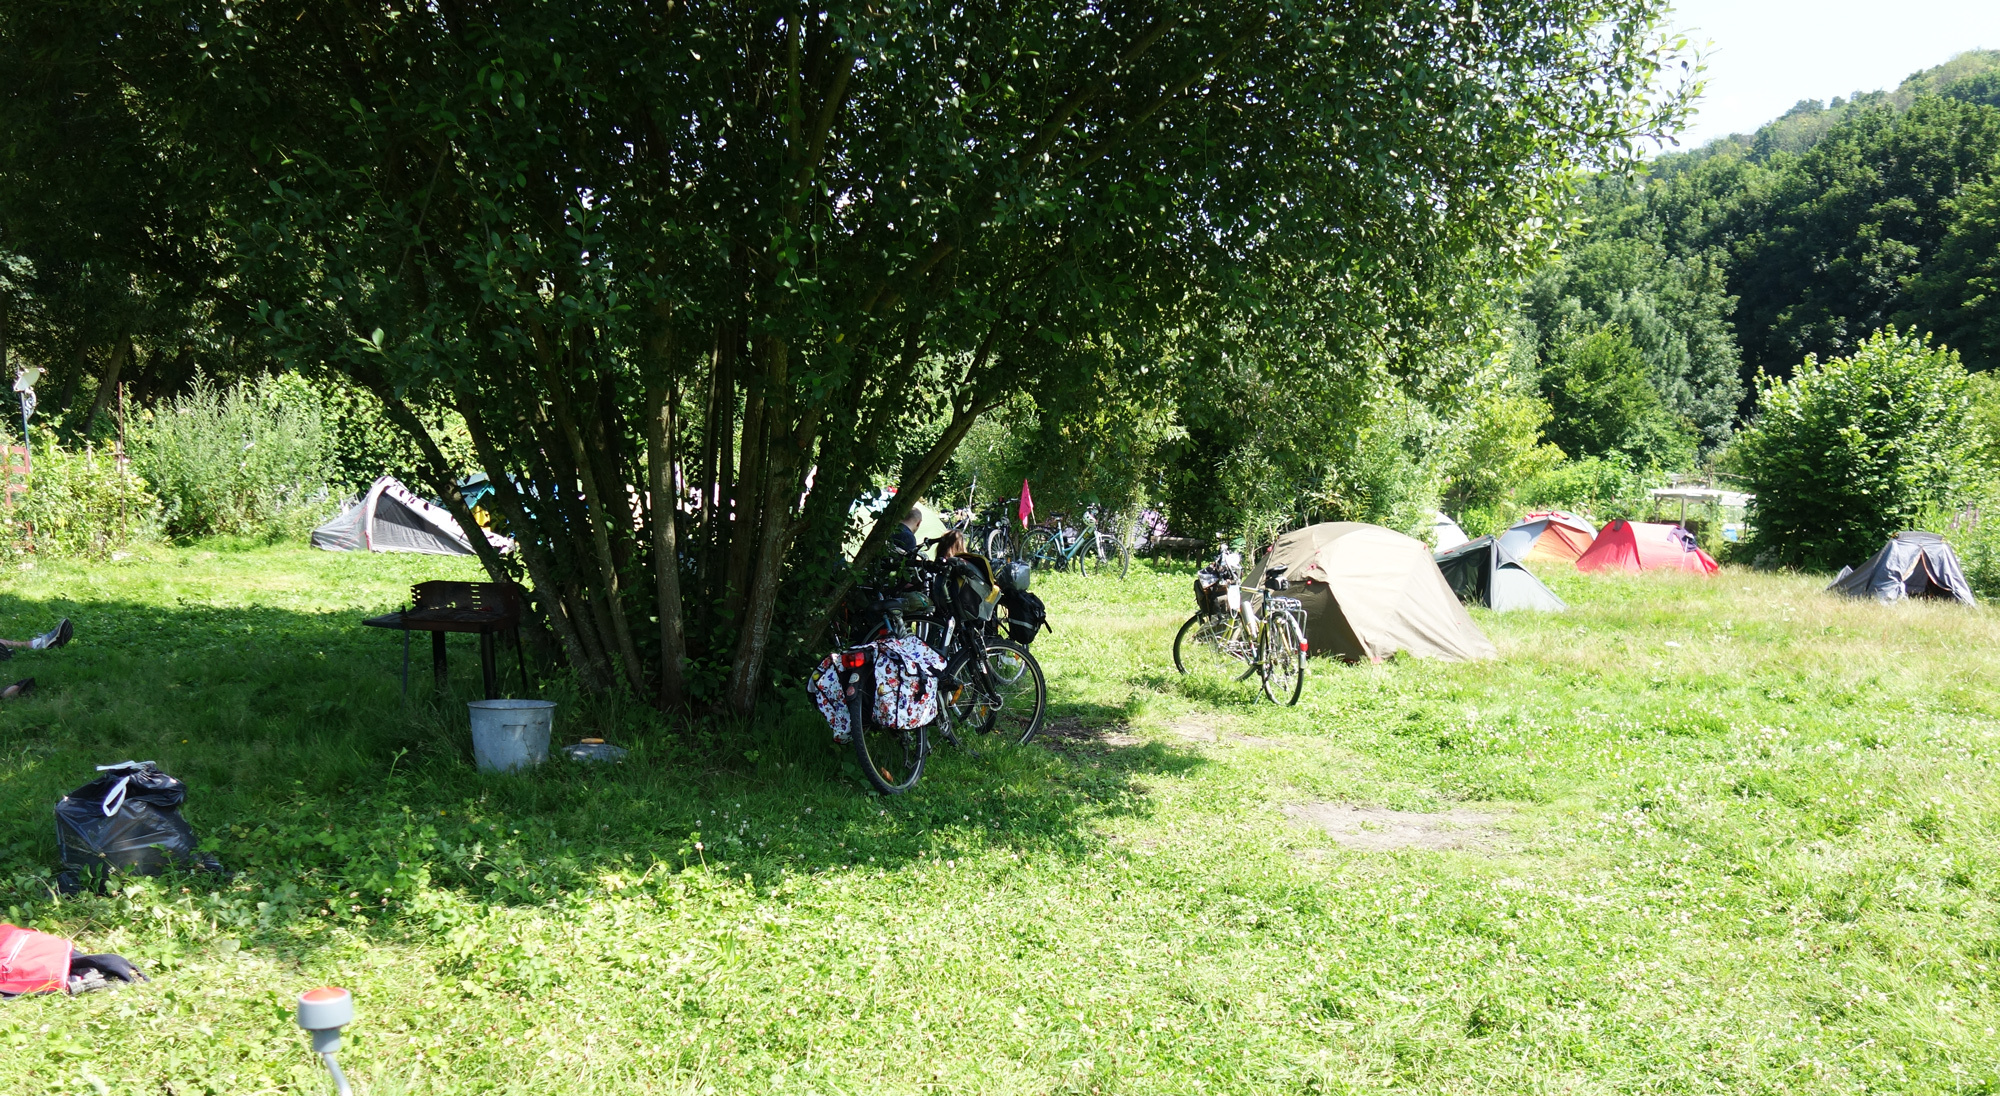 repainville - apsnr - AlterTour à Repainville, le camping